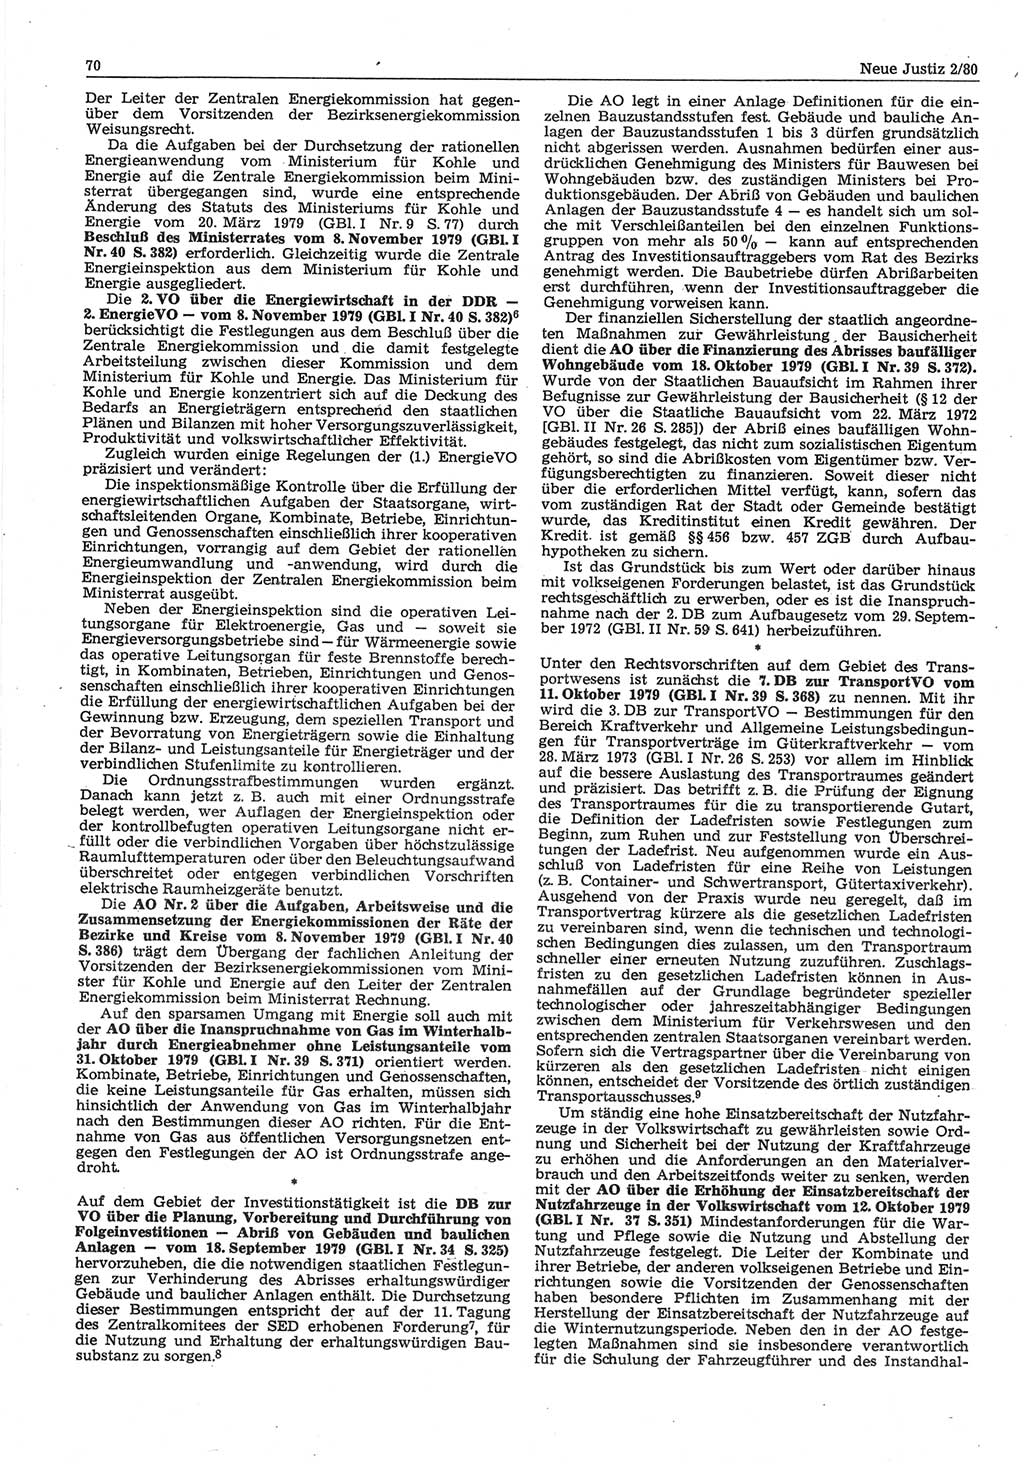 Neue Justiz (NJ), Zeitschrift für sozialistisches Recht und Gesetzlichkeit [Deutsche Demokratische Republik (DDR)], 34. Jahrgang 1980, Seite 70 (NJ DDR 1980, S. 70)